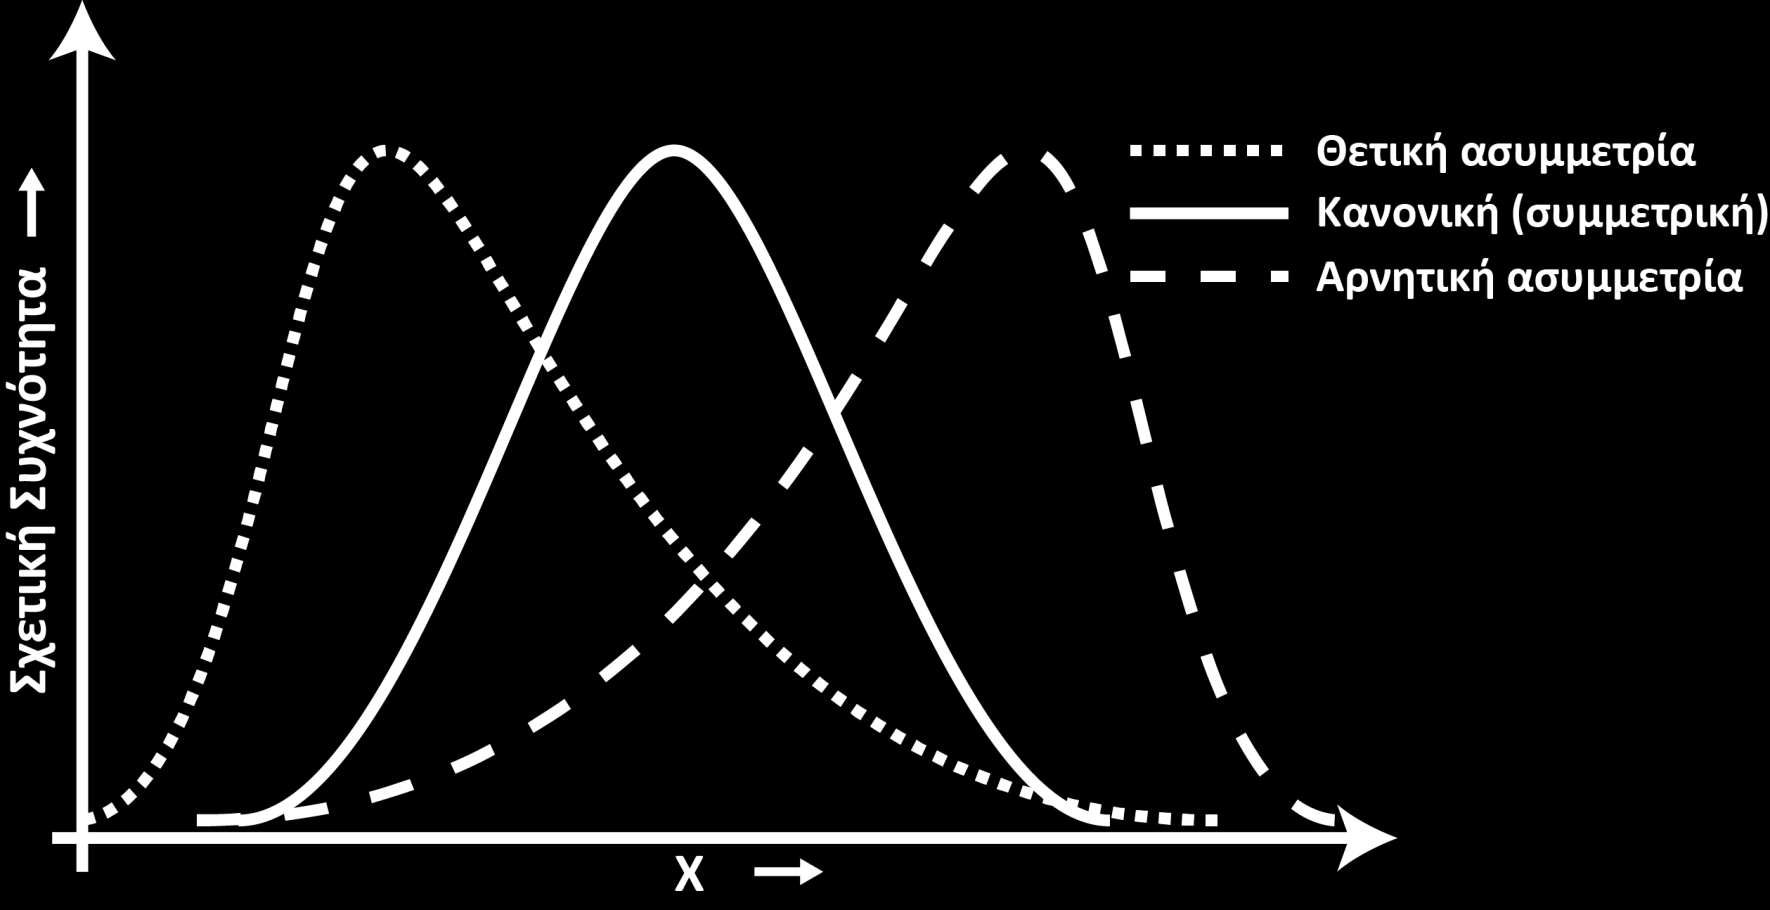 Σχήμα 6 Η ασυμμετρία (Sk 1 ) χαρακτηρίζει την μη κανονικότητα μιας κατανομής των κλασμάτων της κοκκομετρικής ανάλυσης, εκφράζοντας έτσι το βαθμό της ασυμμετρίας δειγμάτων ιζήματος που κατά τα άλλα